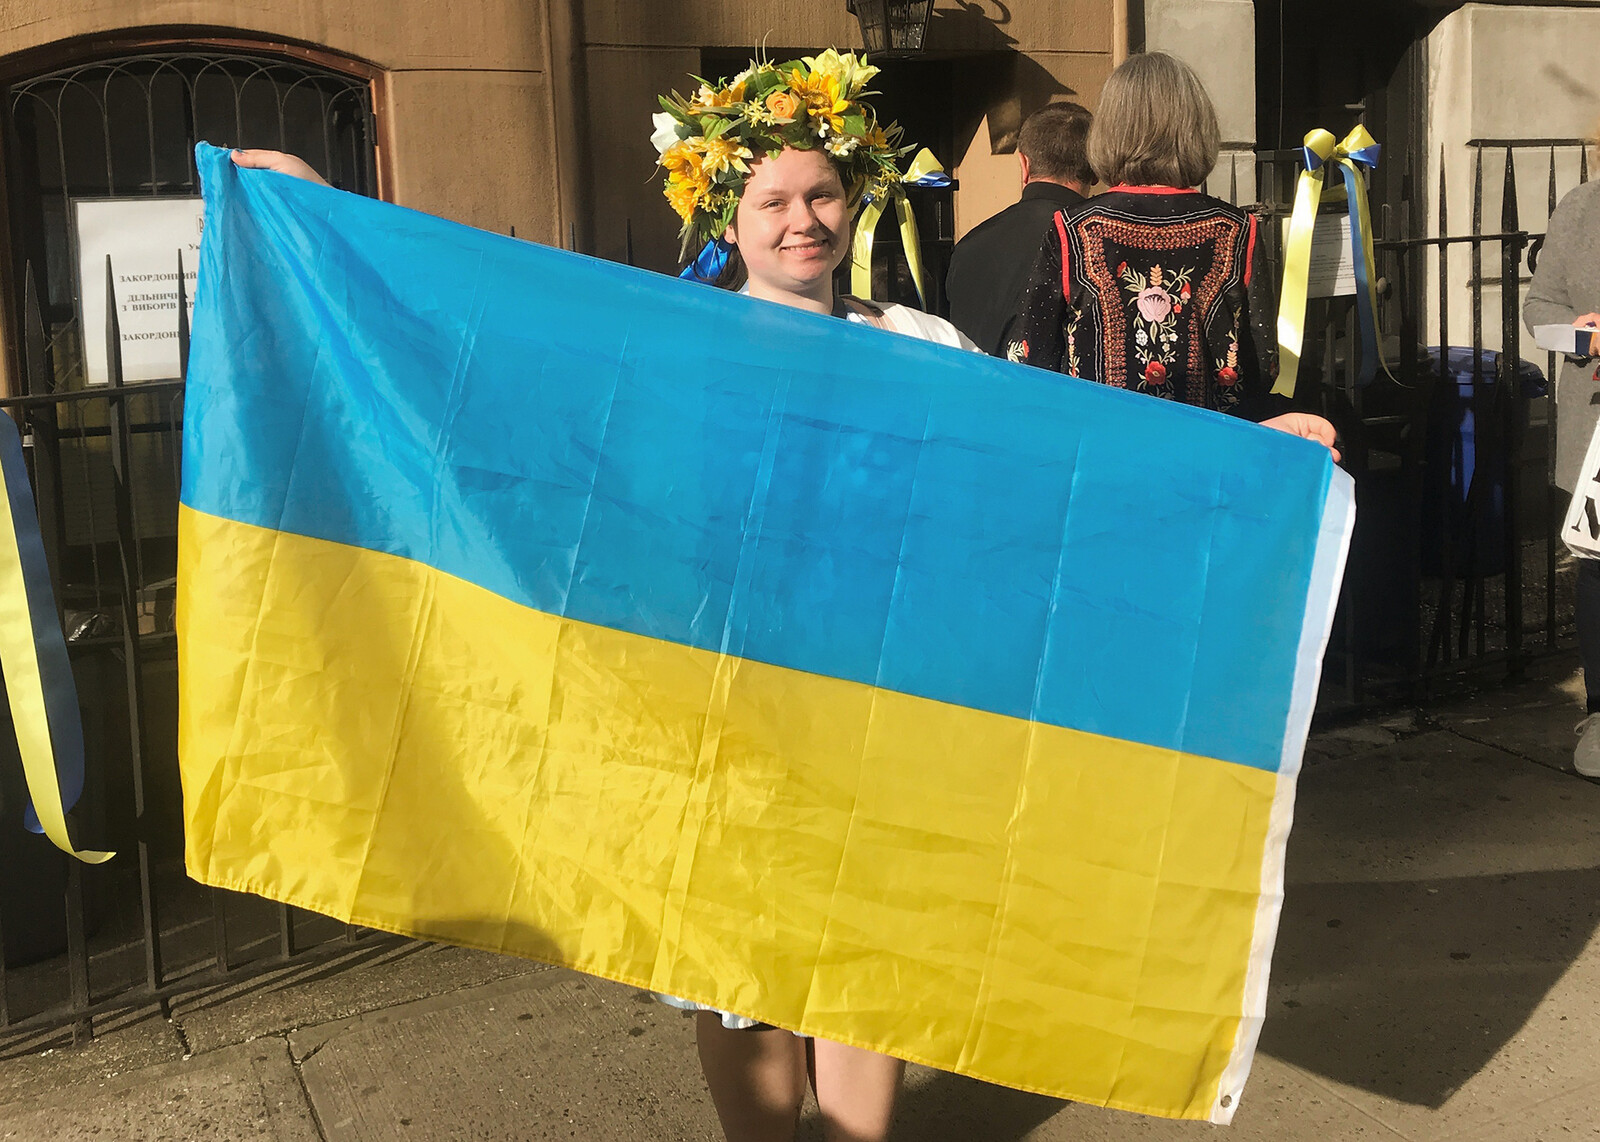 Alice Sukhina with the ukranian flag